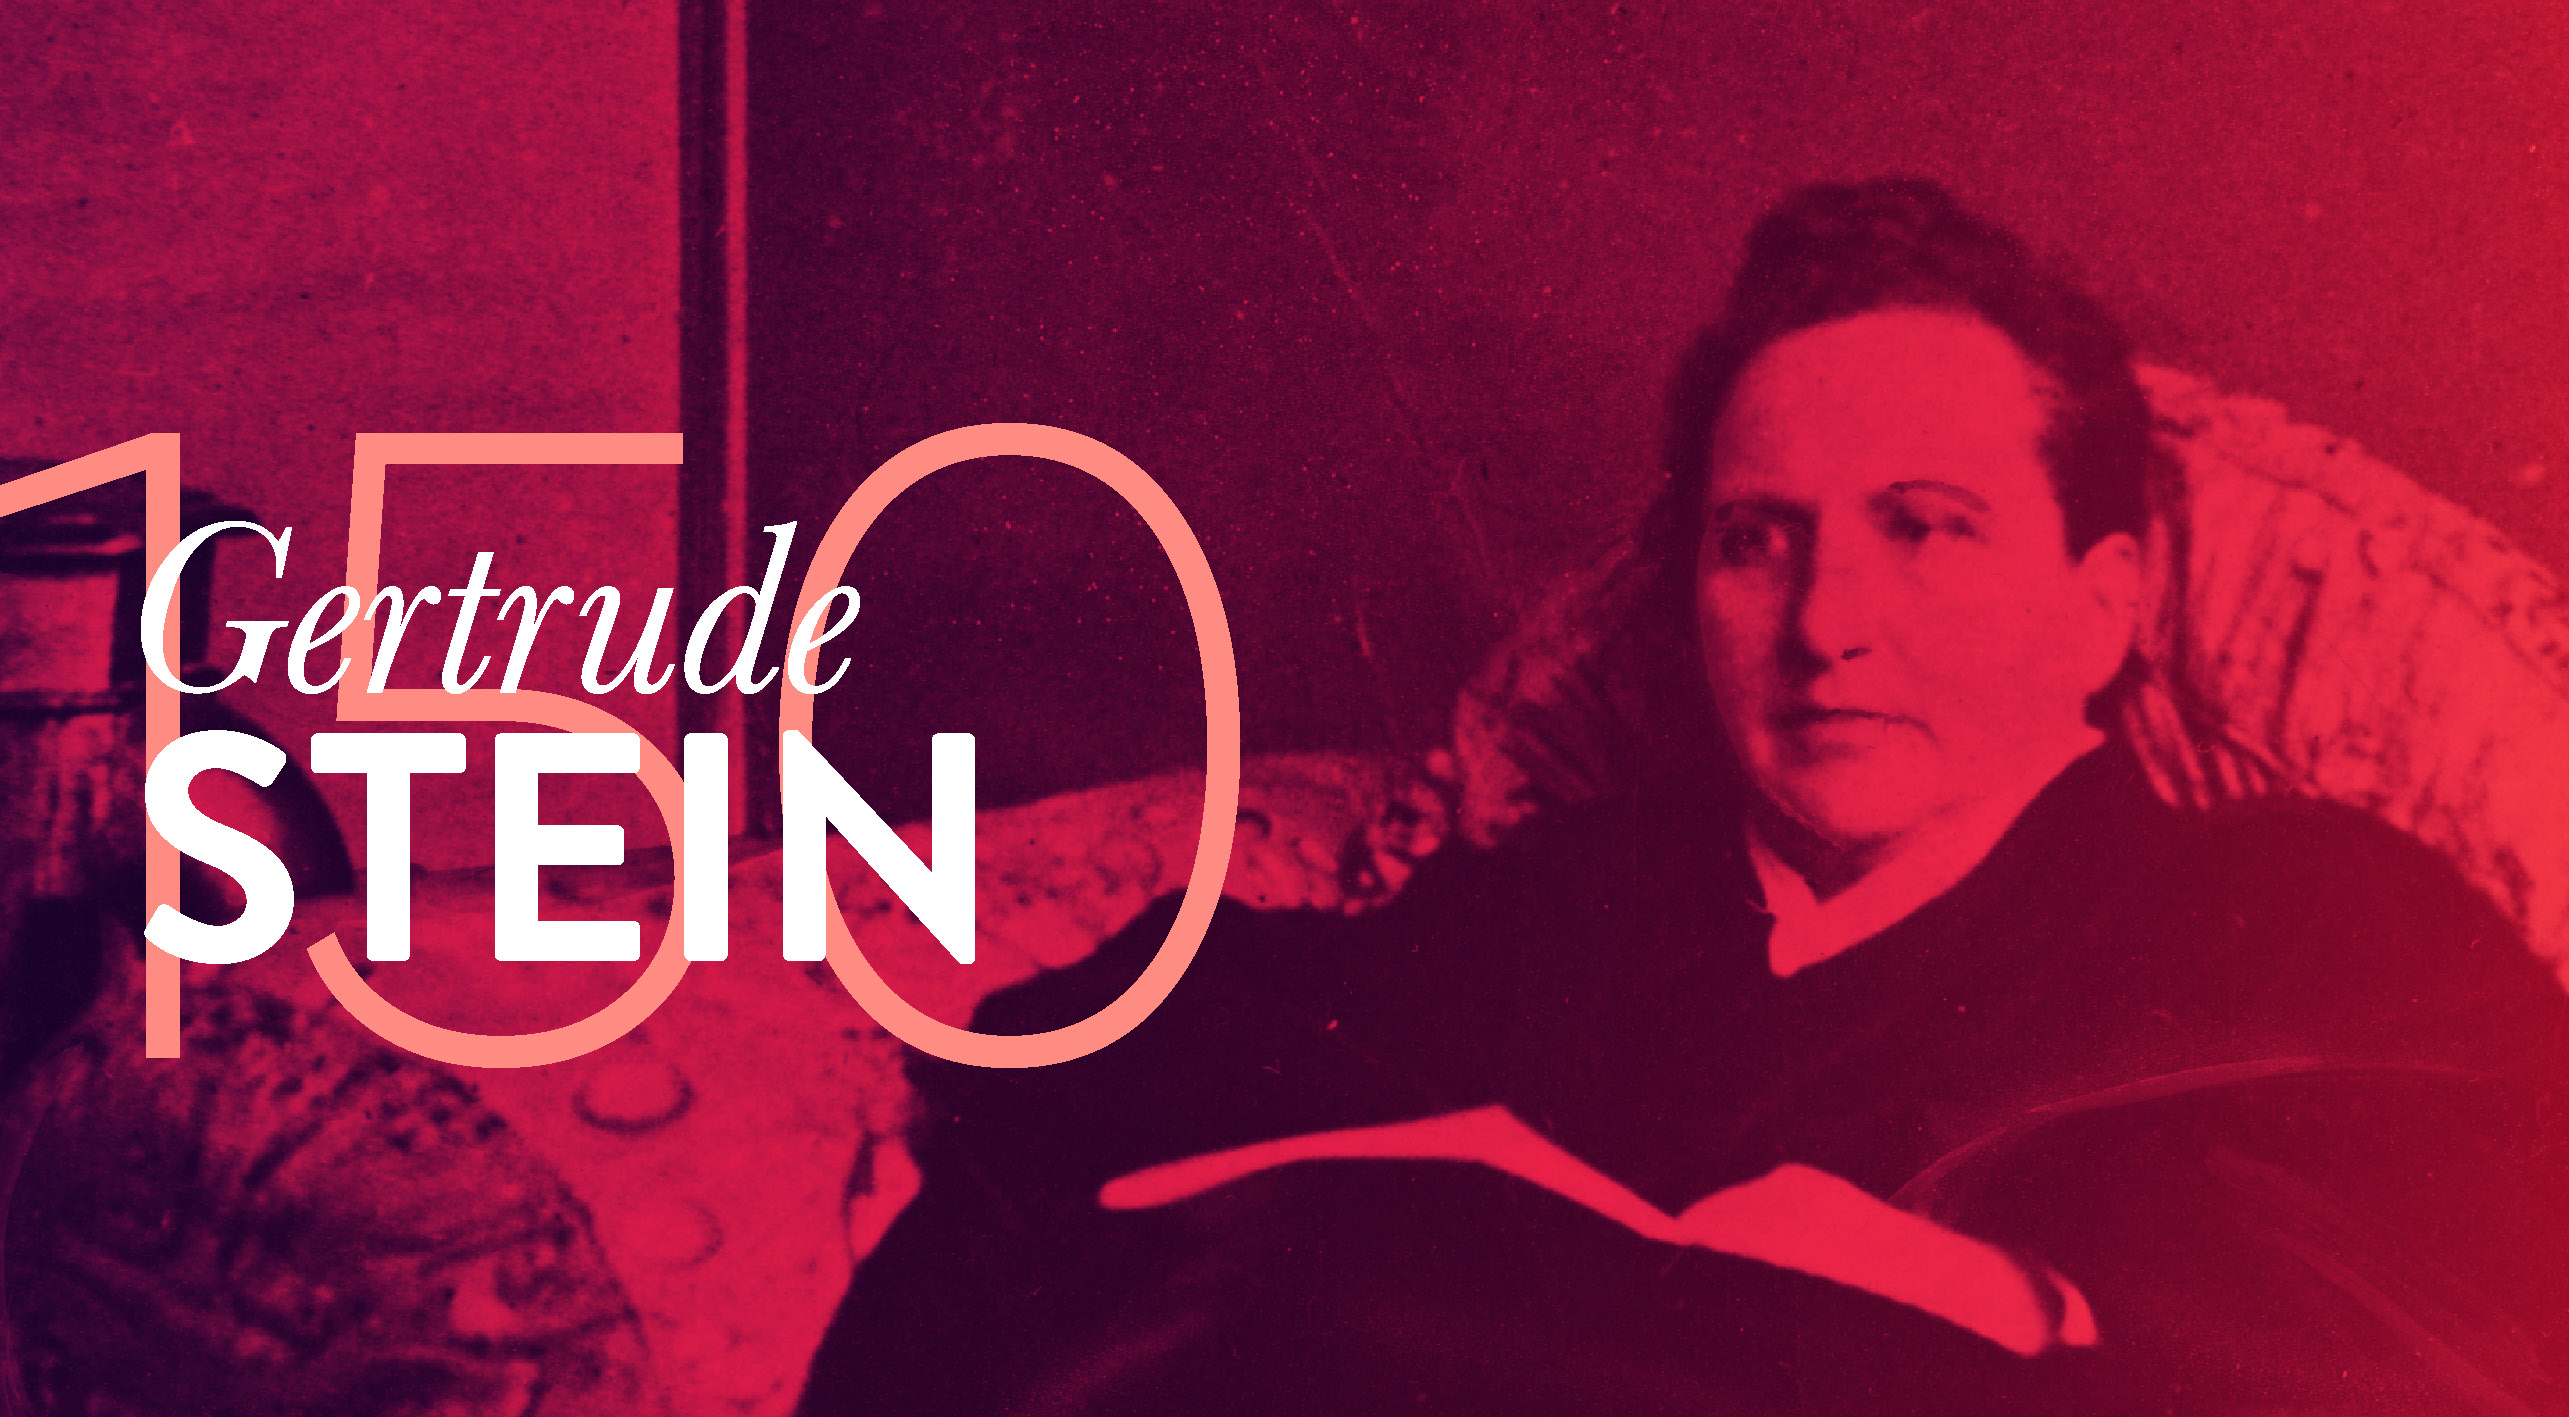 Gertrude Stein: Áldott Emília